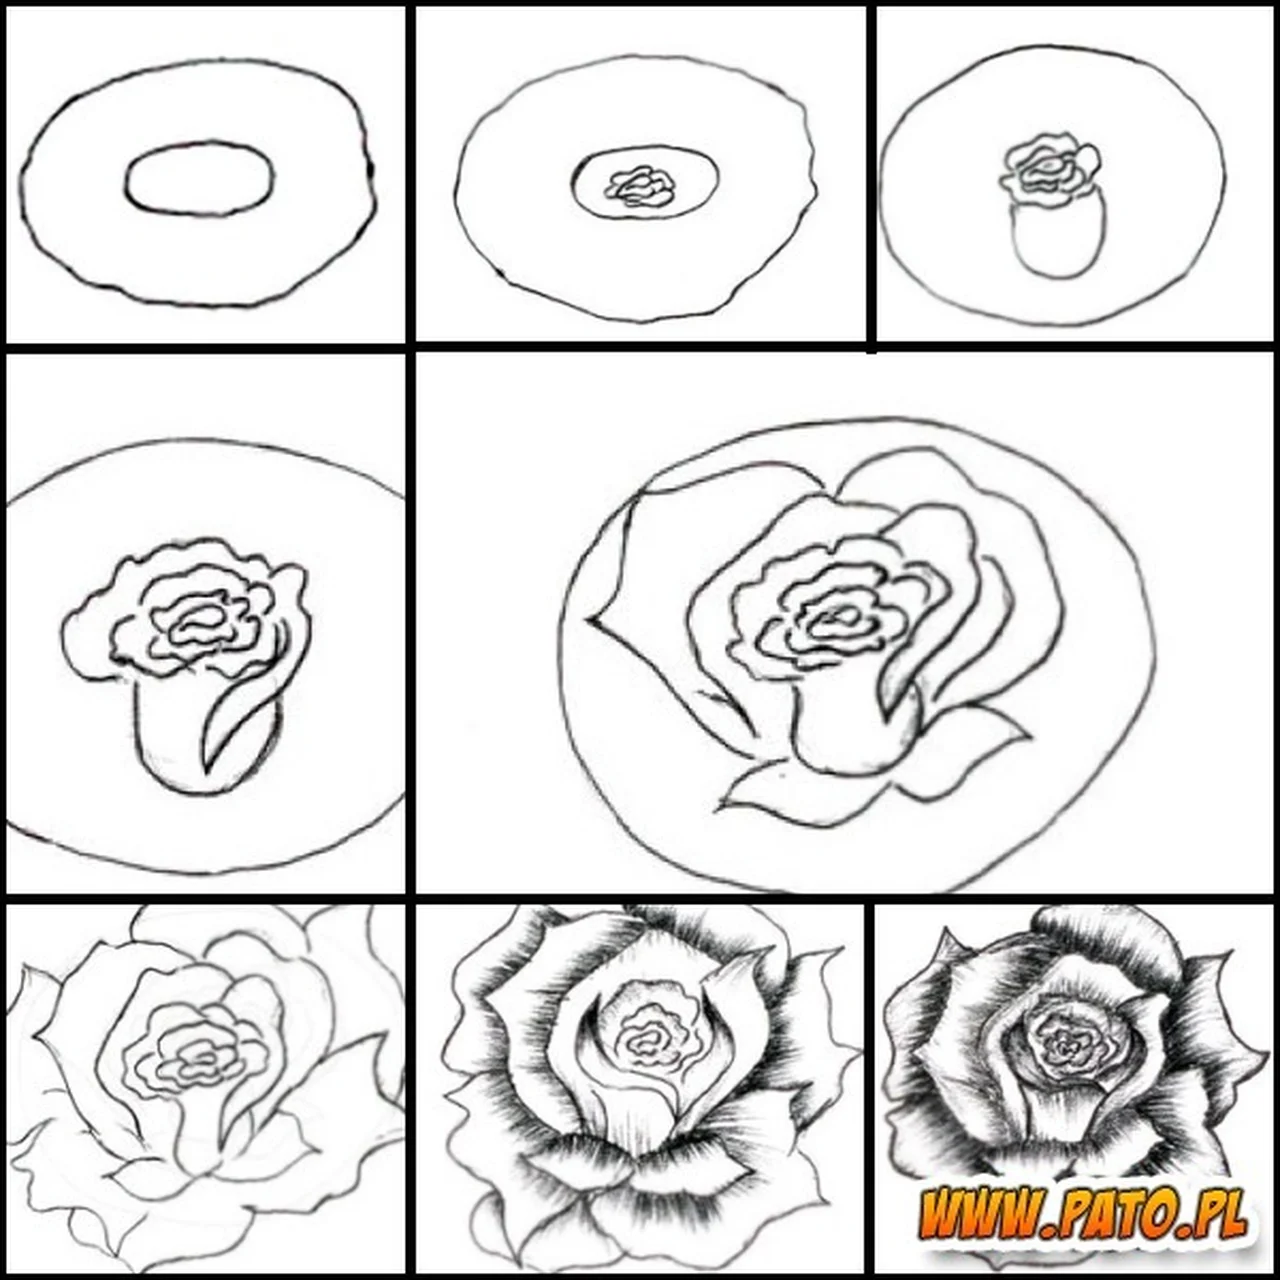 Jak narysować różę?